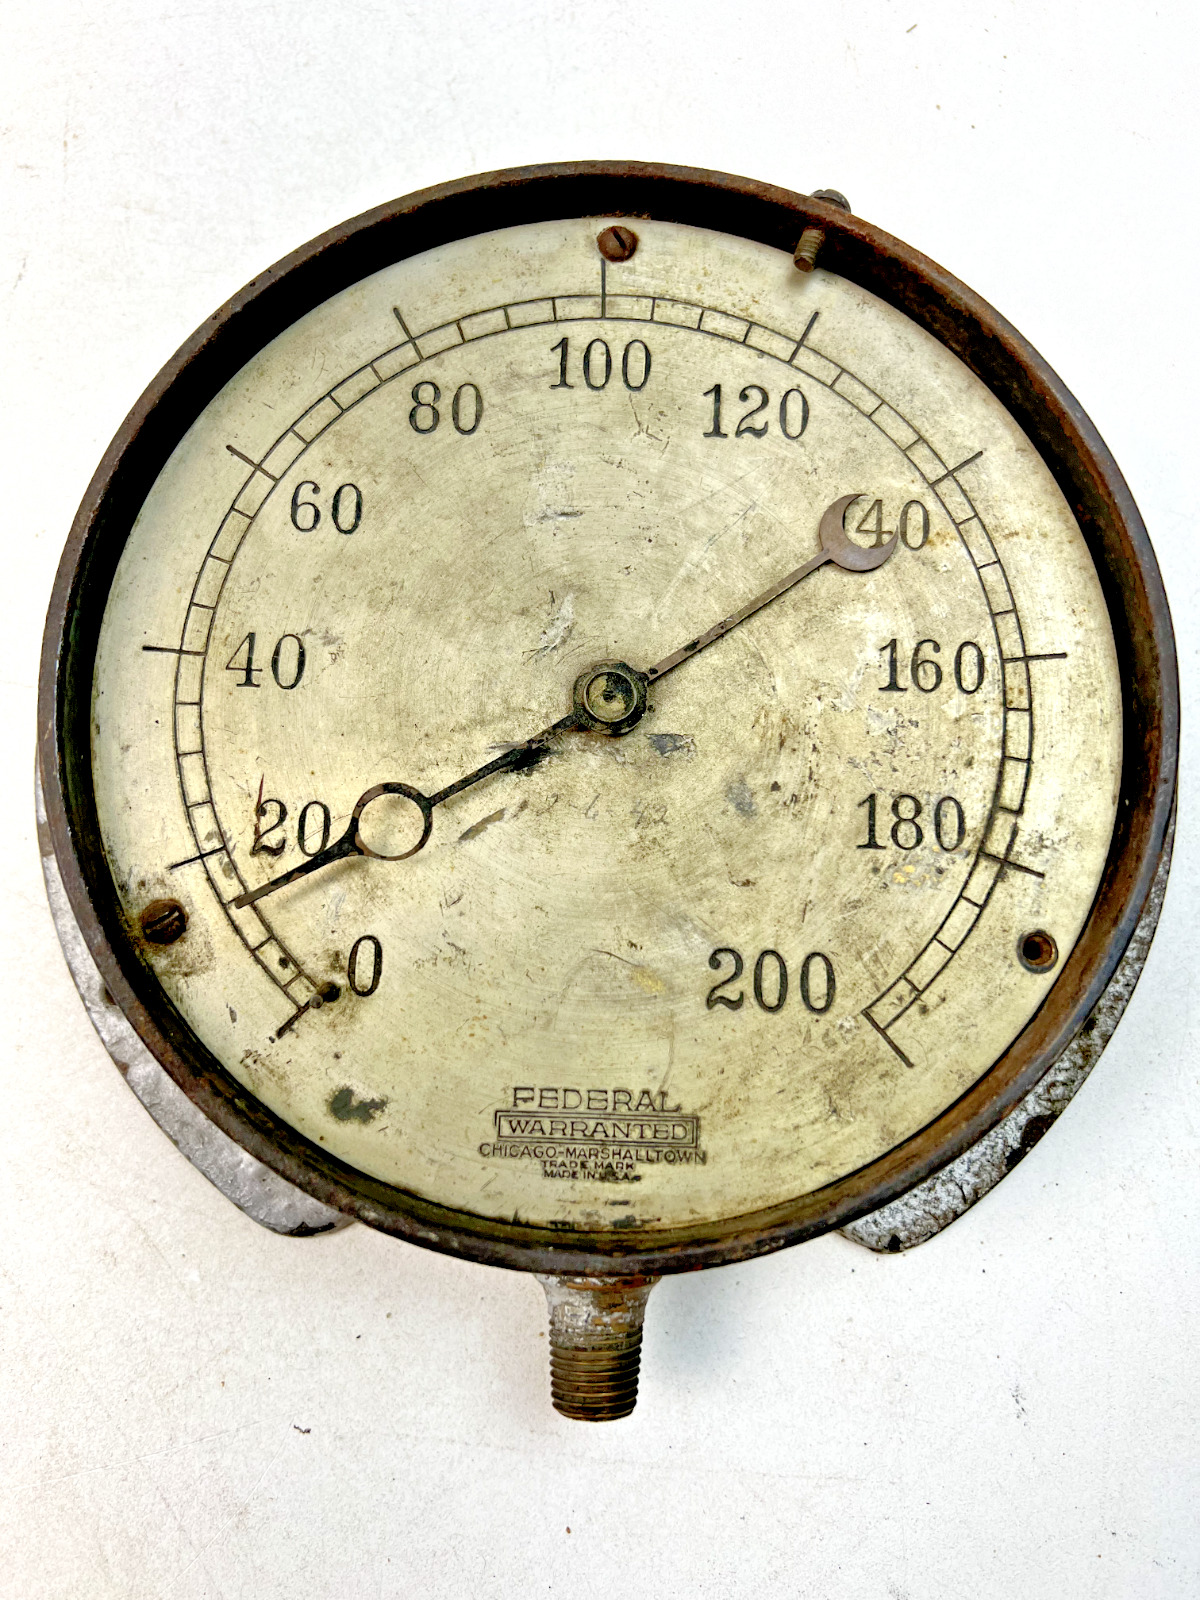 Vintage Federal Warranted Chicago-Marshalltown 200psi Steam Pressure Gauge